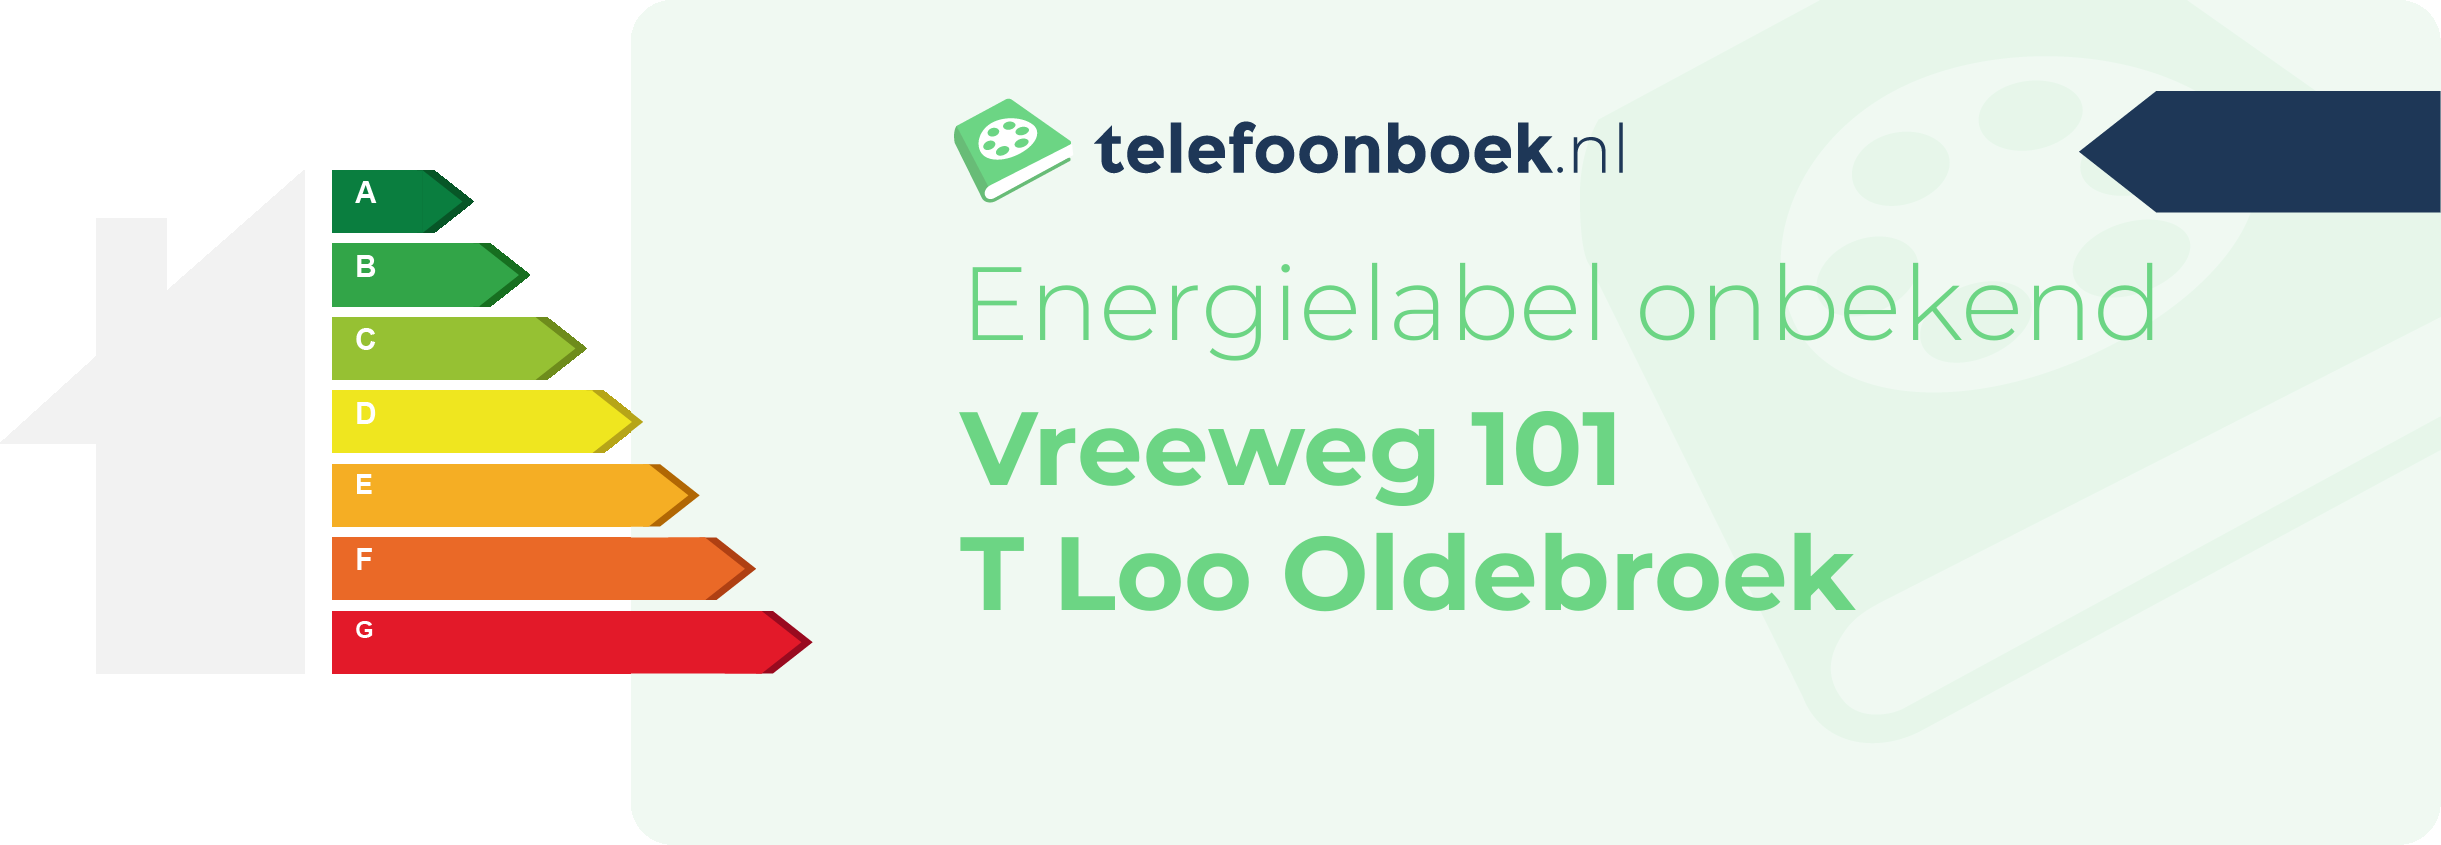 Energielabel Vreeweg 101 T Loo Oldebroek